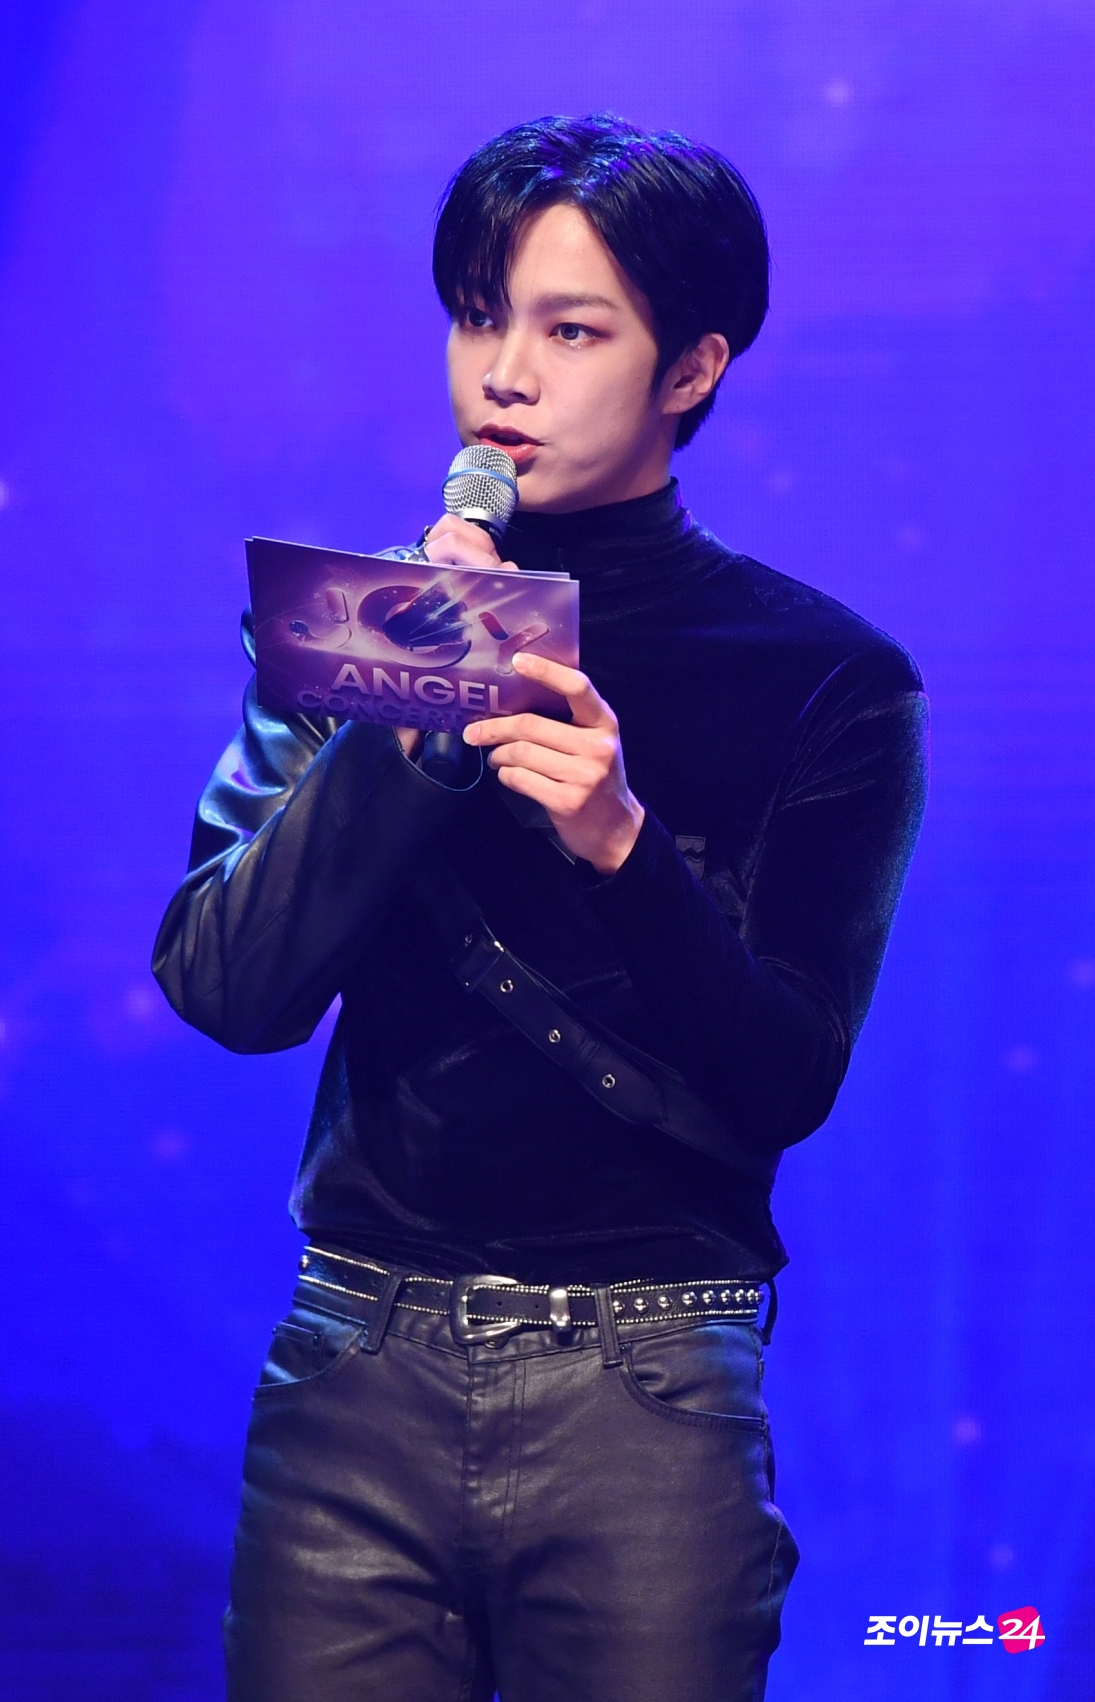 베리베리 동헌이 21일 오후 서울 구로아트밸리에서 열린 온택트 컬래버레이션 콘서트 '조이천사콘서트'에서 오프닝 MC로 참석하고 있다.